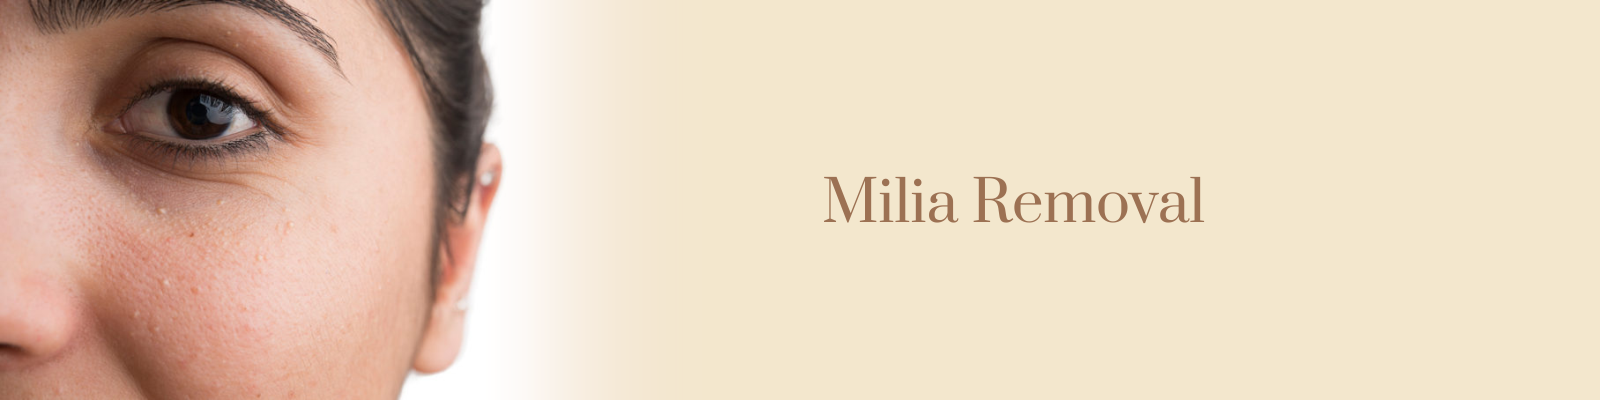 Milia Removal Treatment in Delhi